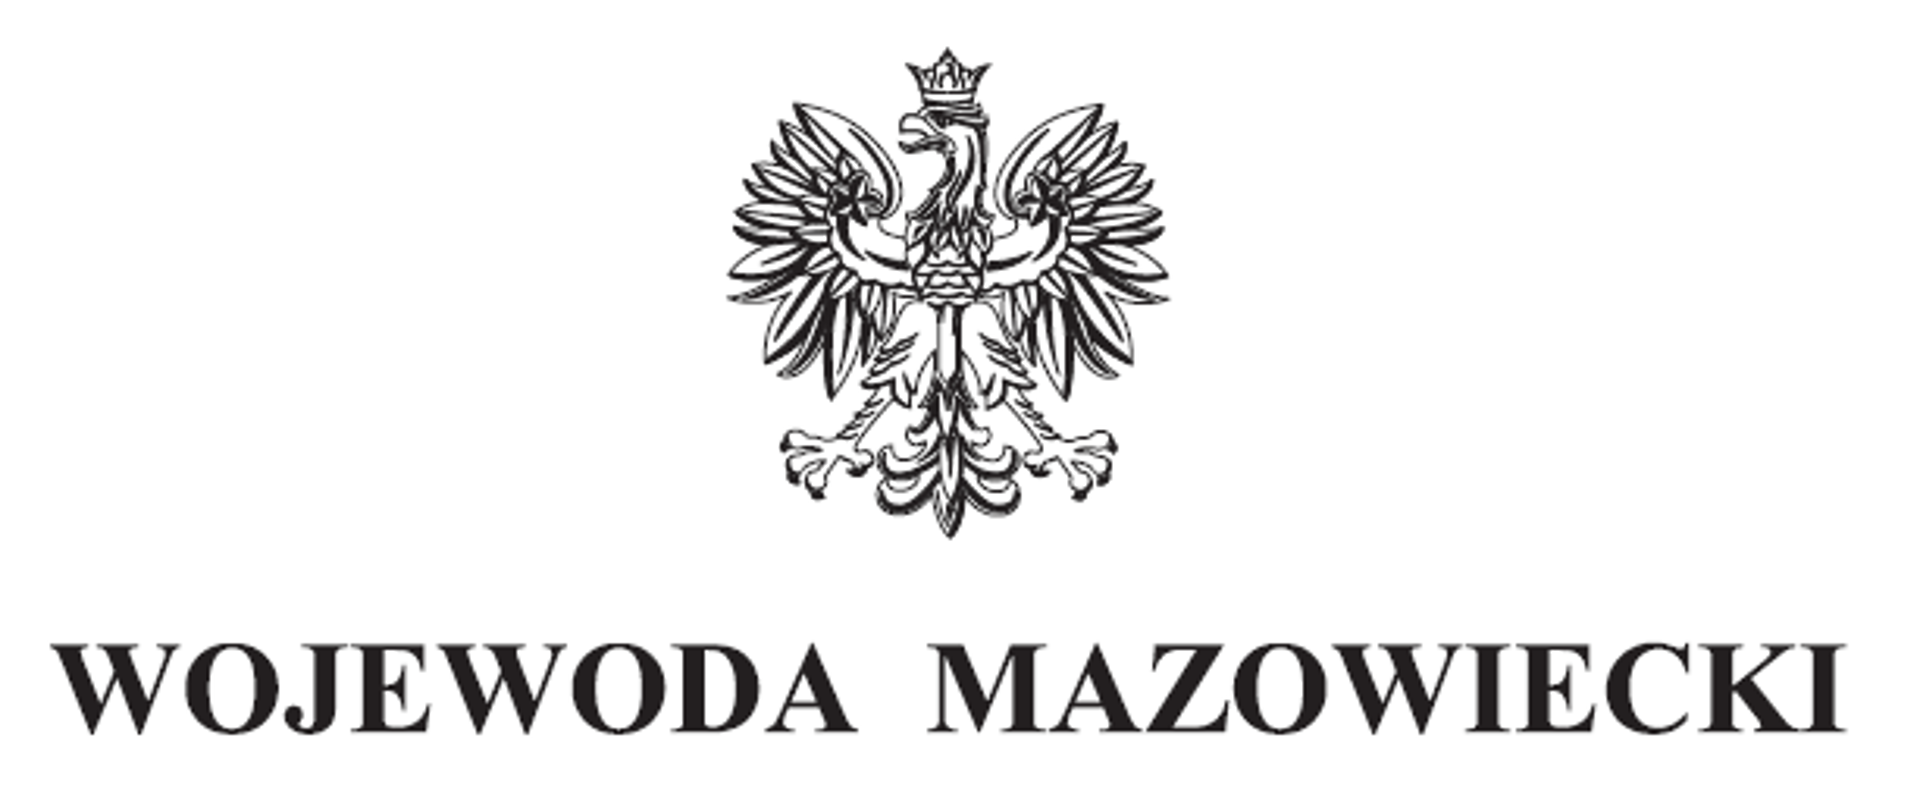 Logotyp Wojewoda Mazowiecki z symbolem orła.